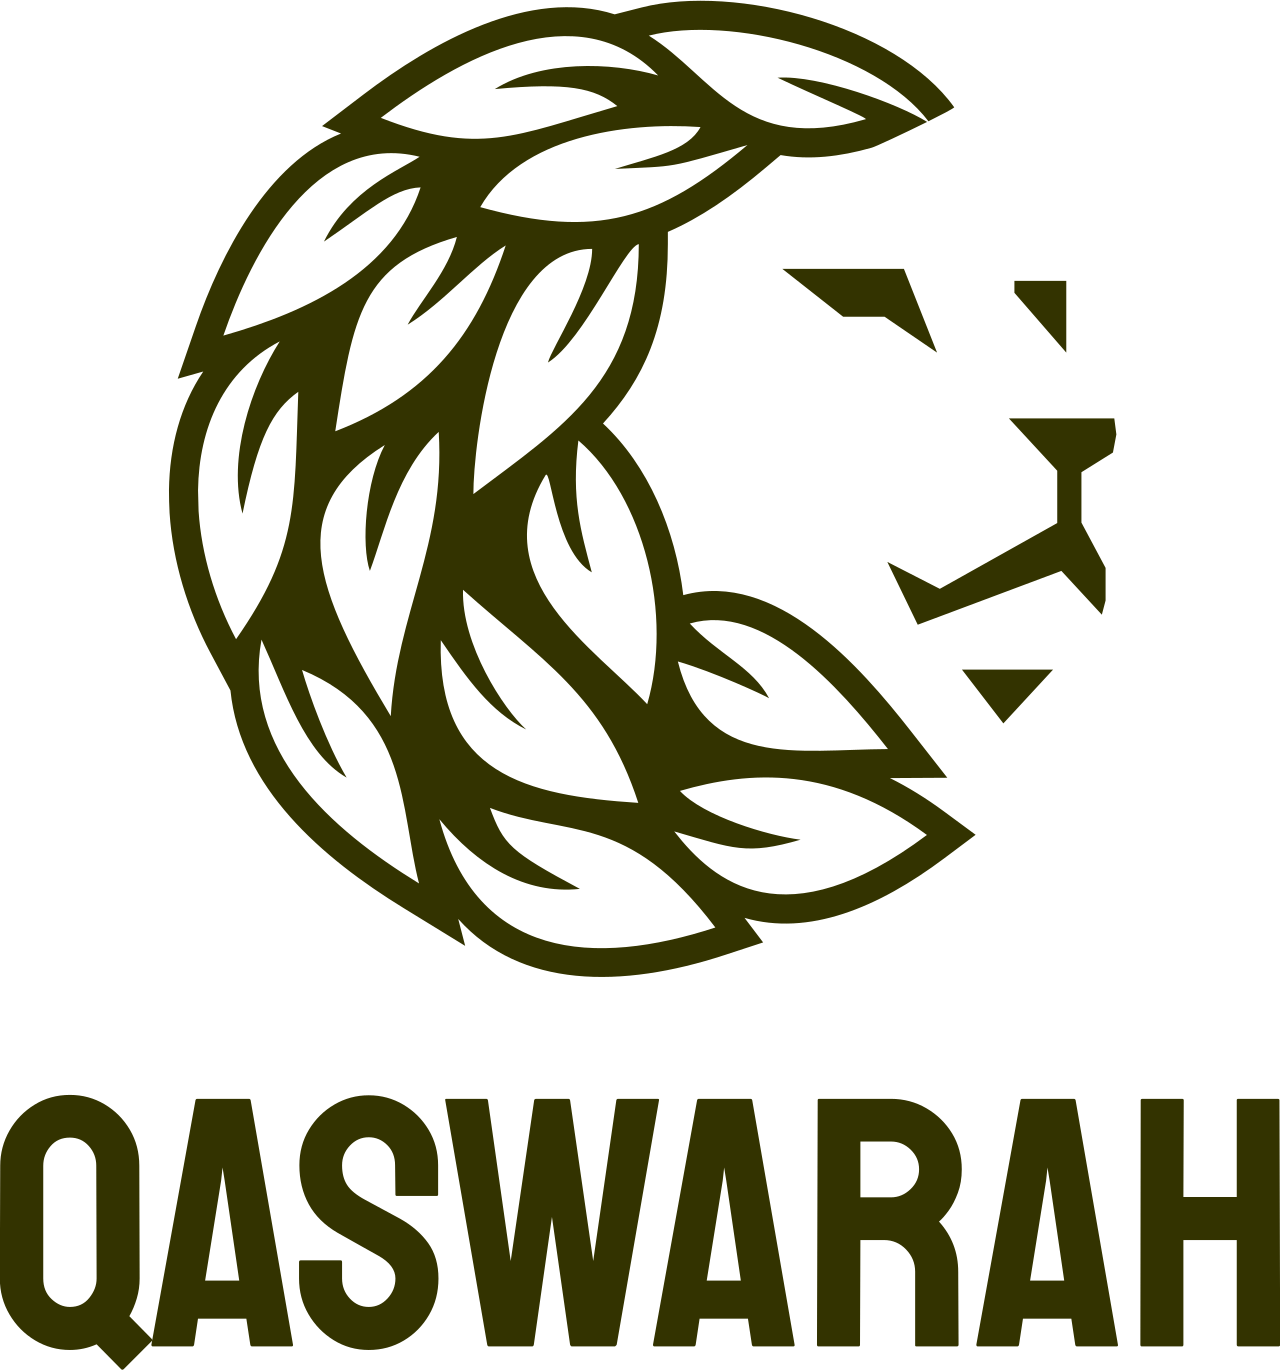 QASWARAH MARKETING's logo